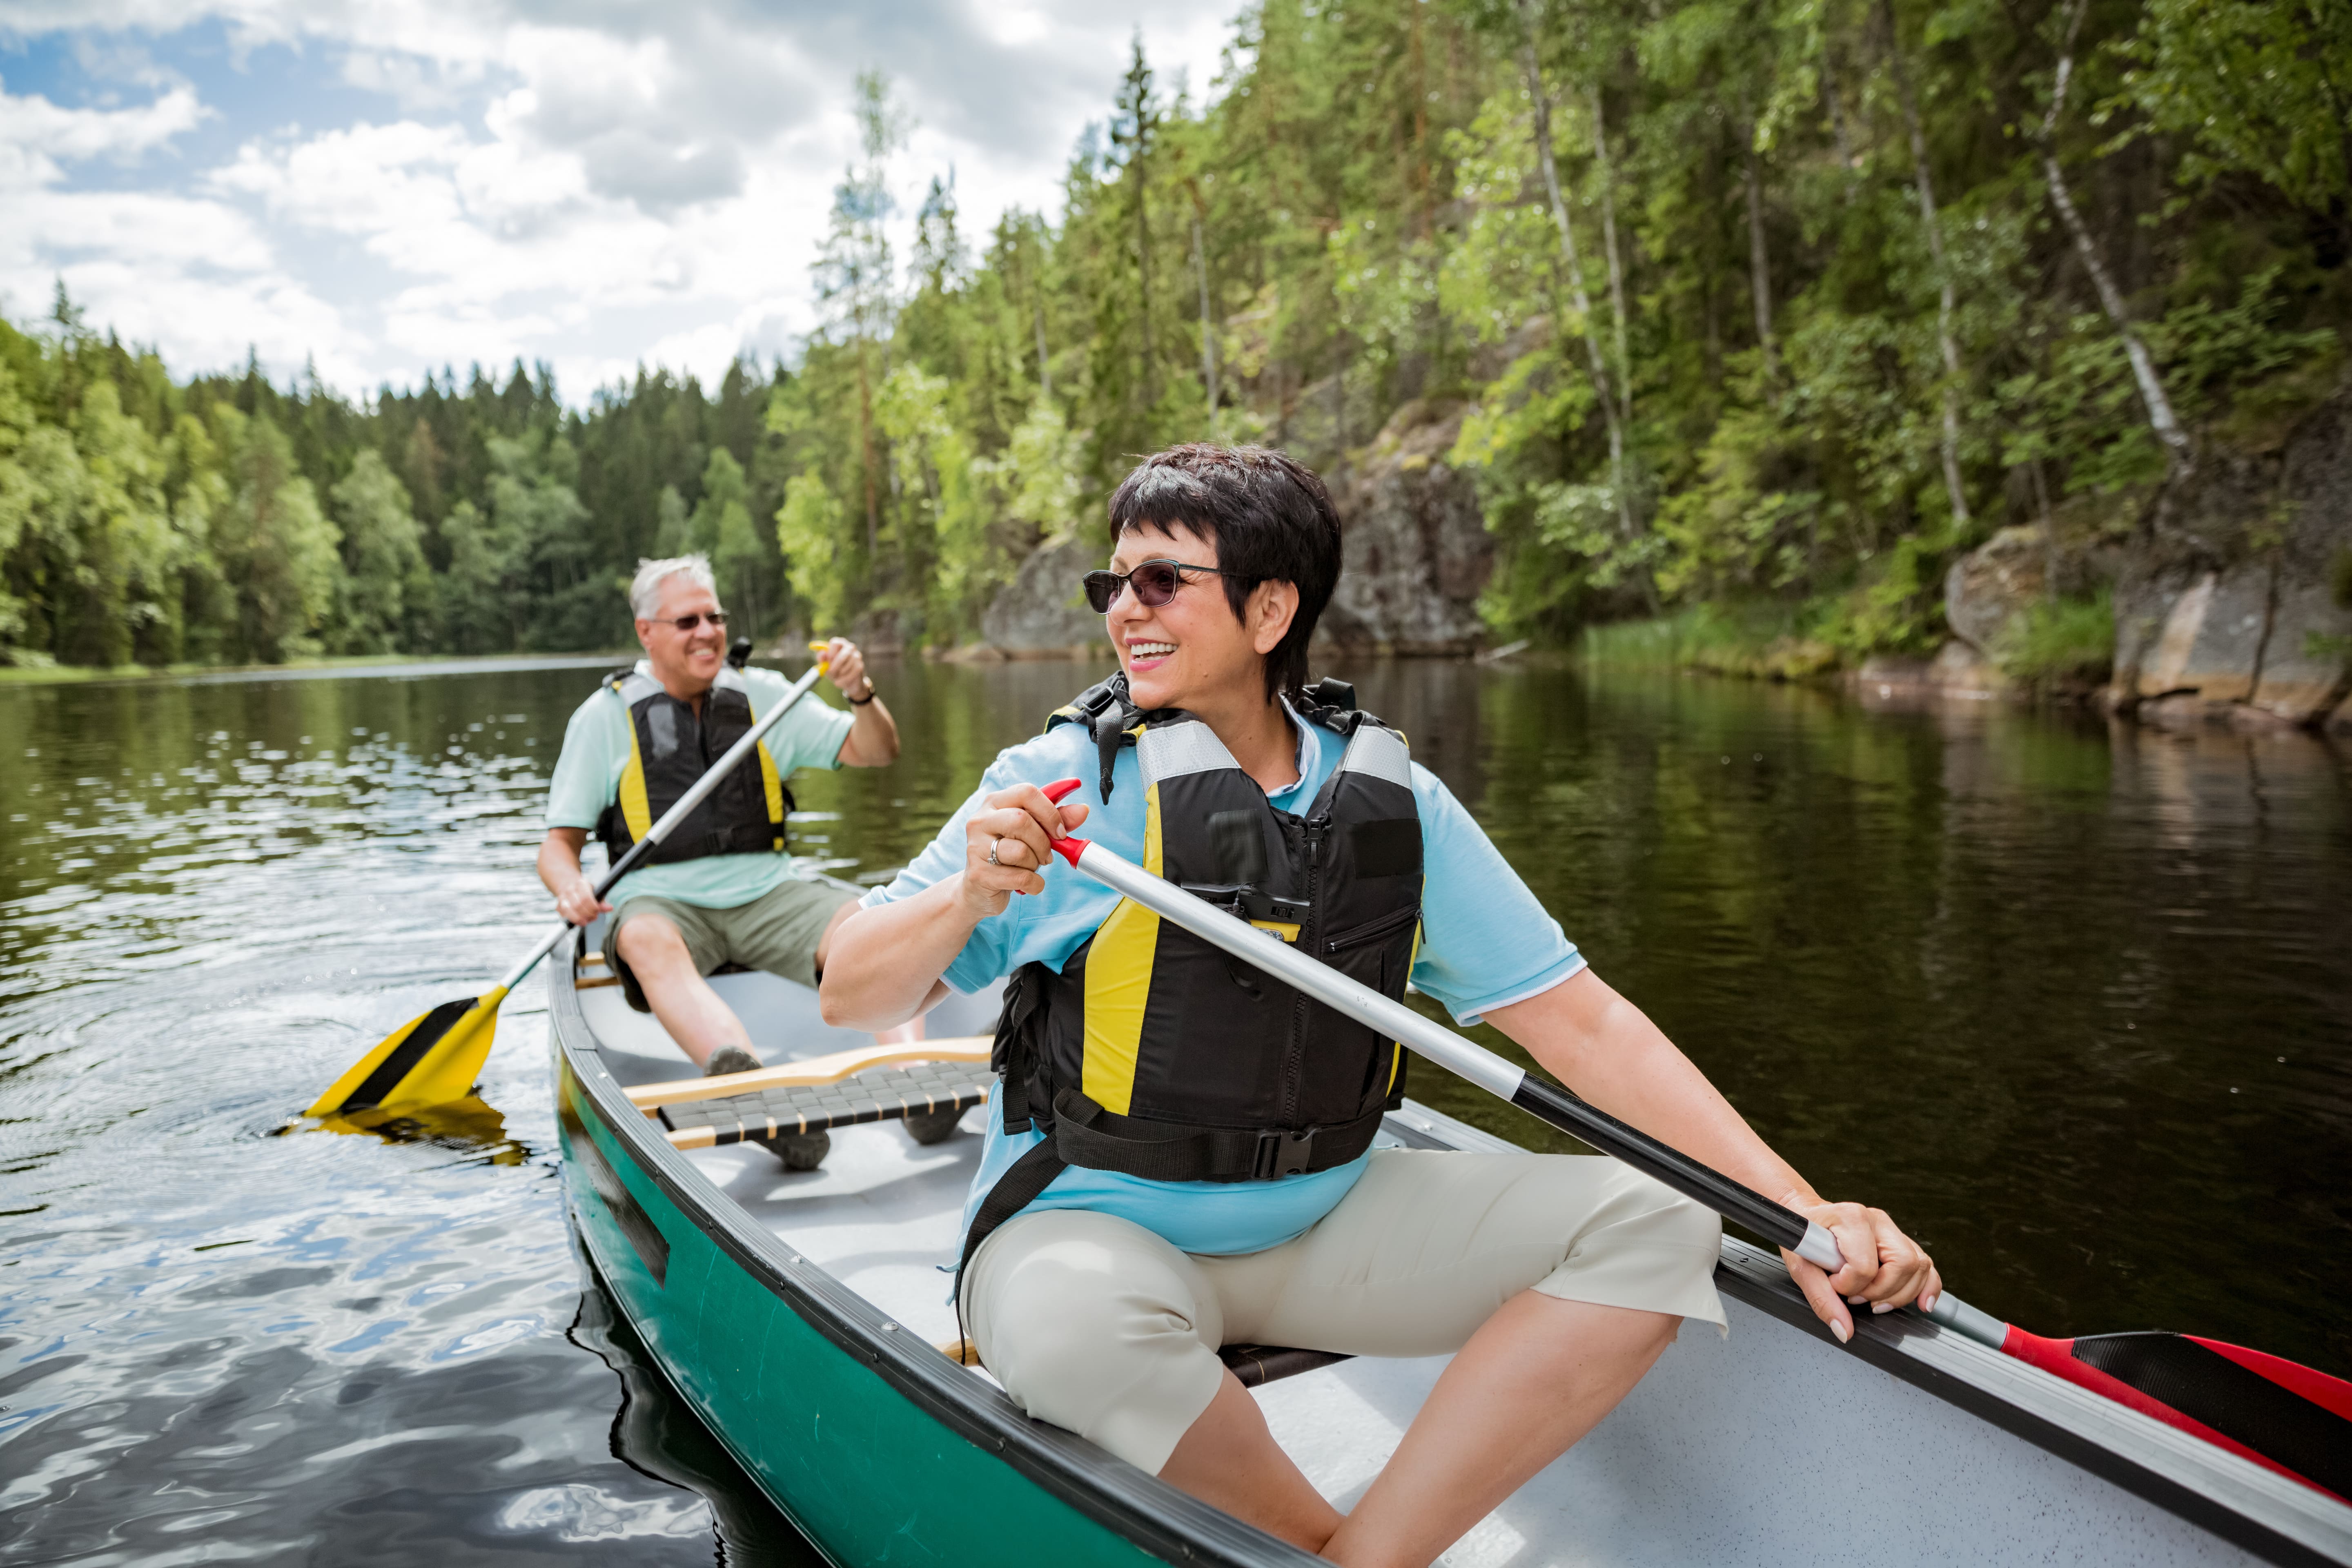 Heureux couple mature en gilets de sauvetage canoë-kayak dans le lac de la forêt. Journée d'été ensoleillée. Touristes voyageant en Finlande, ayant l'aventure. © Suzi Media - stock.adobe.com